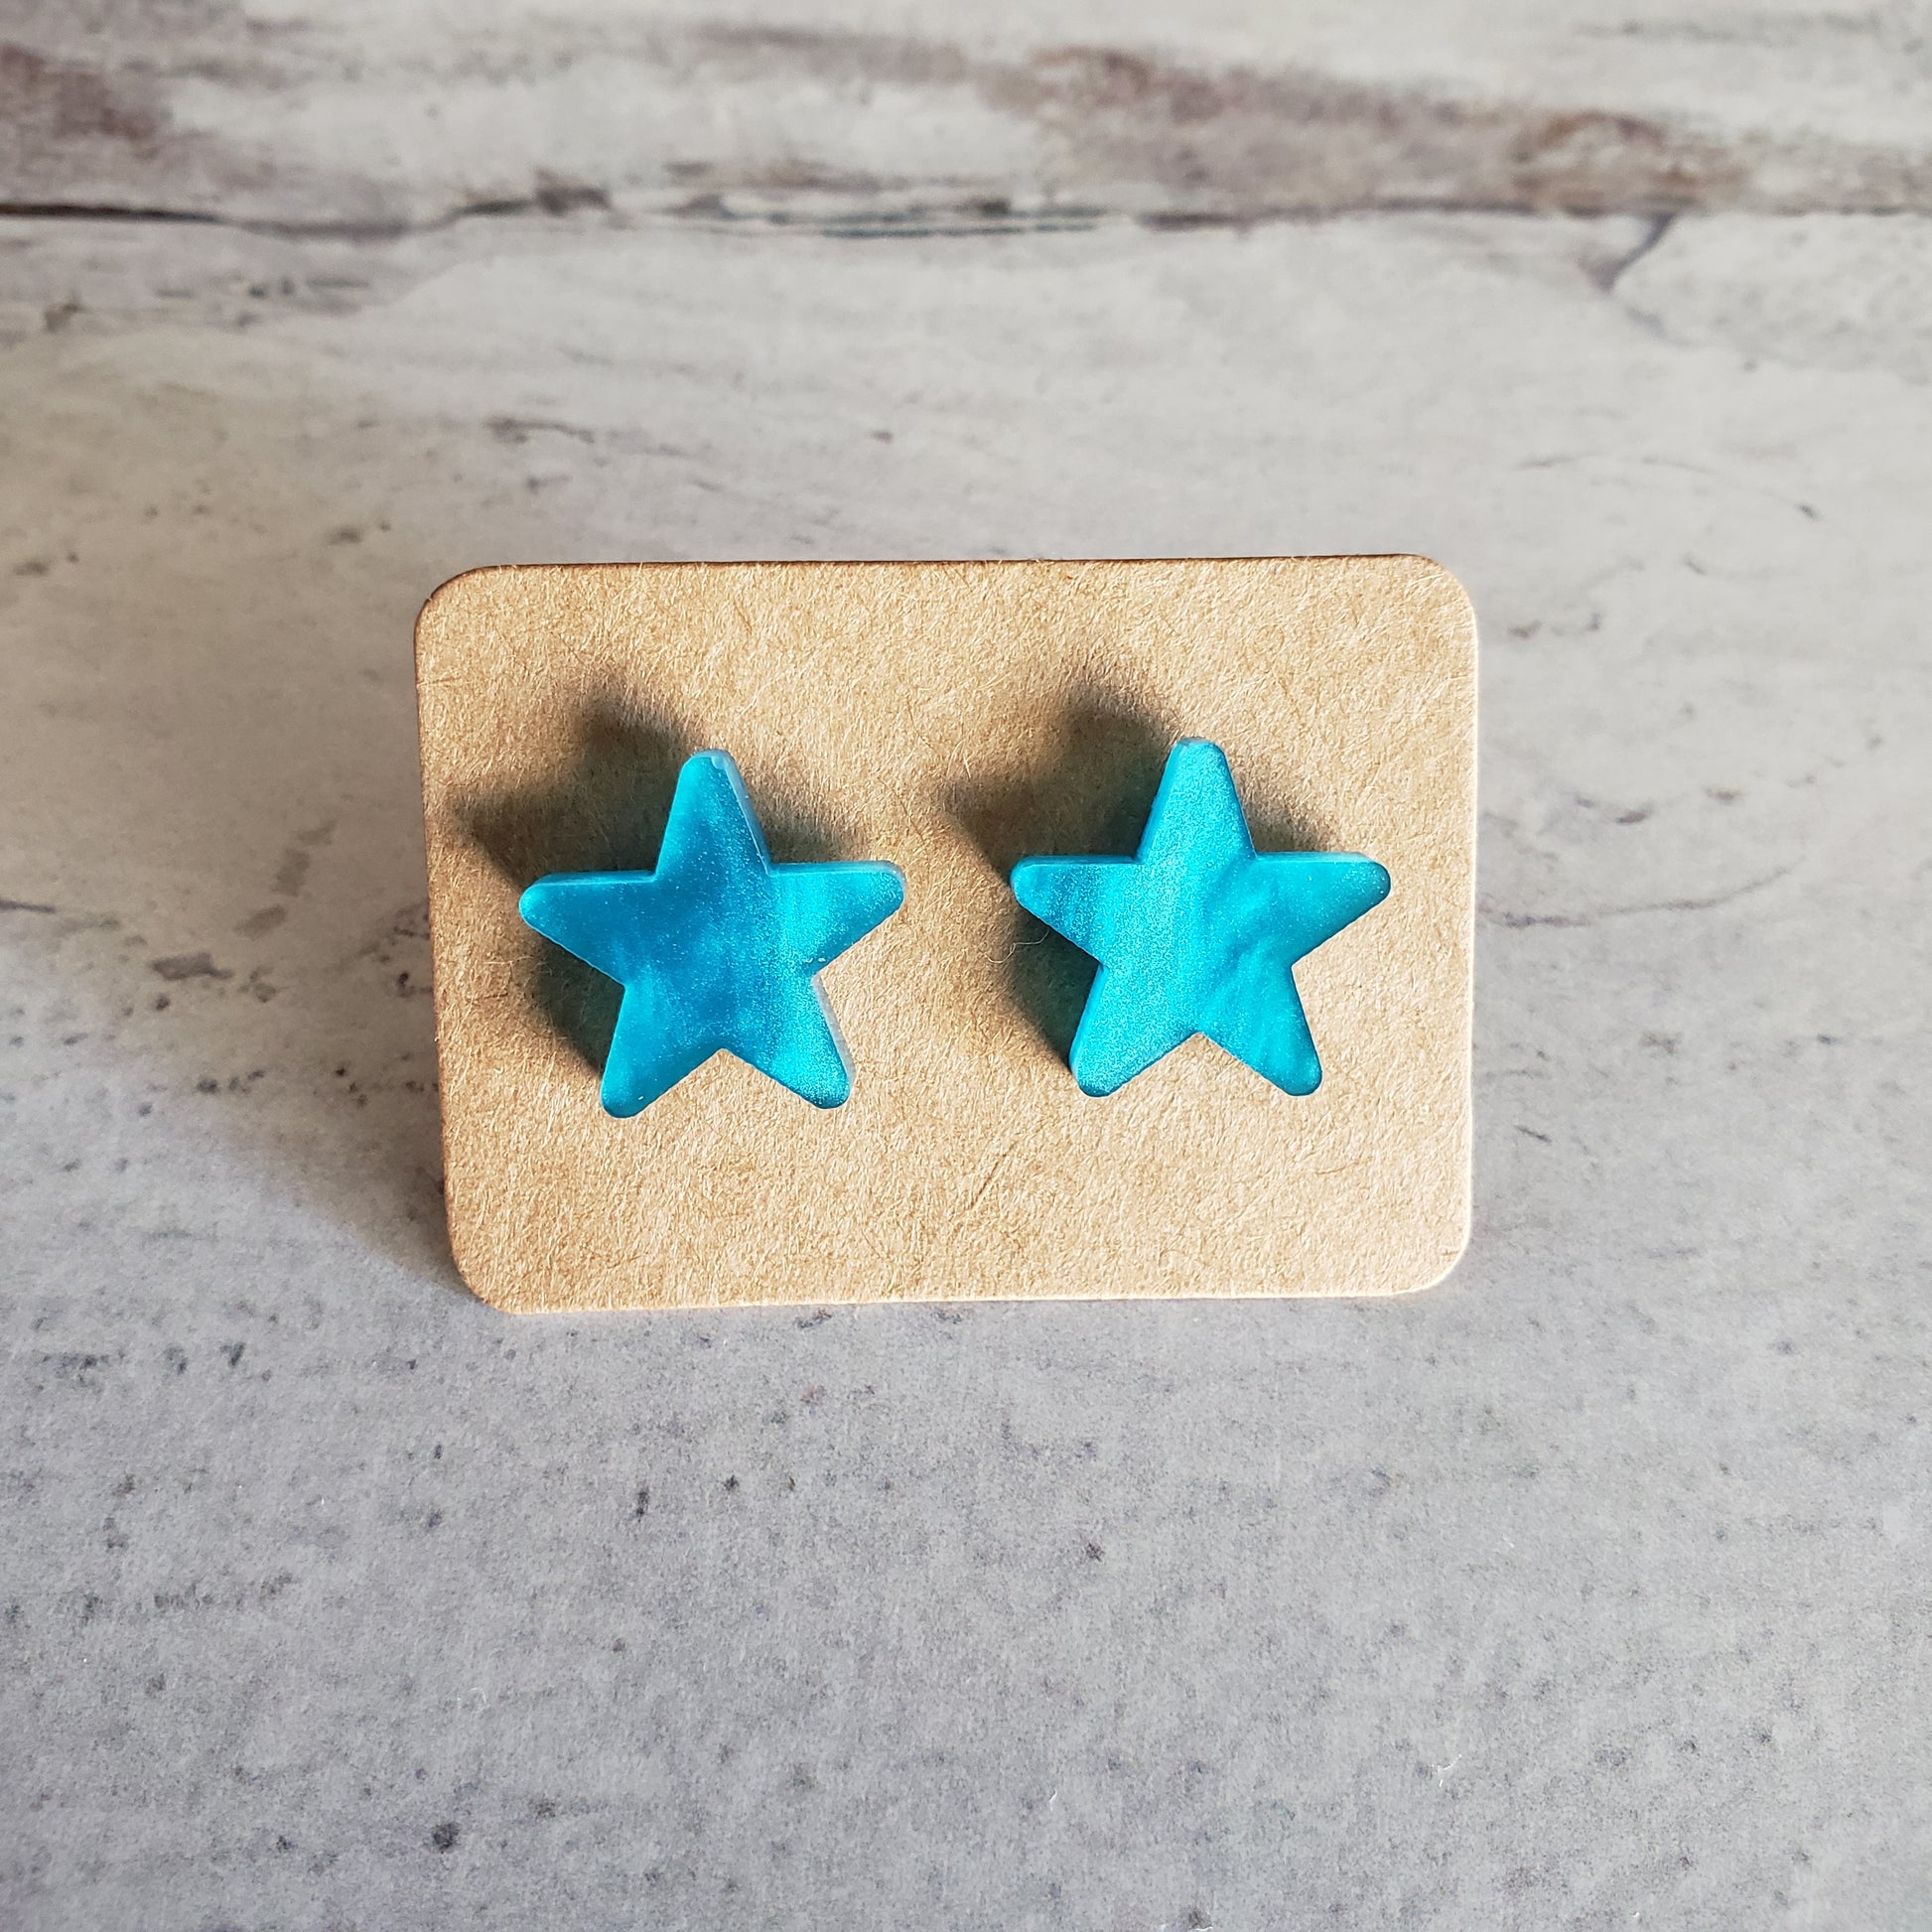 Blue pearl star shaped stud earrings on earring card